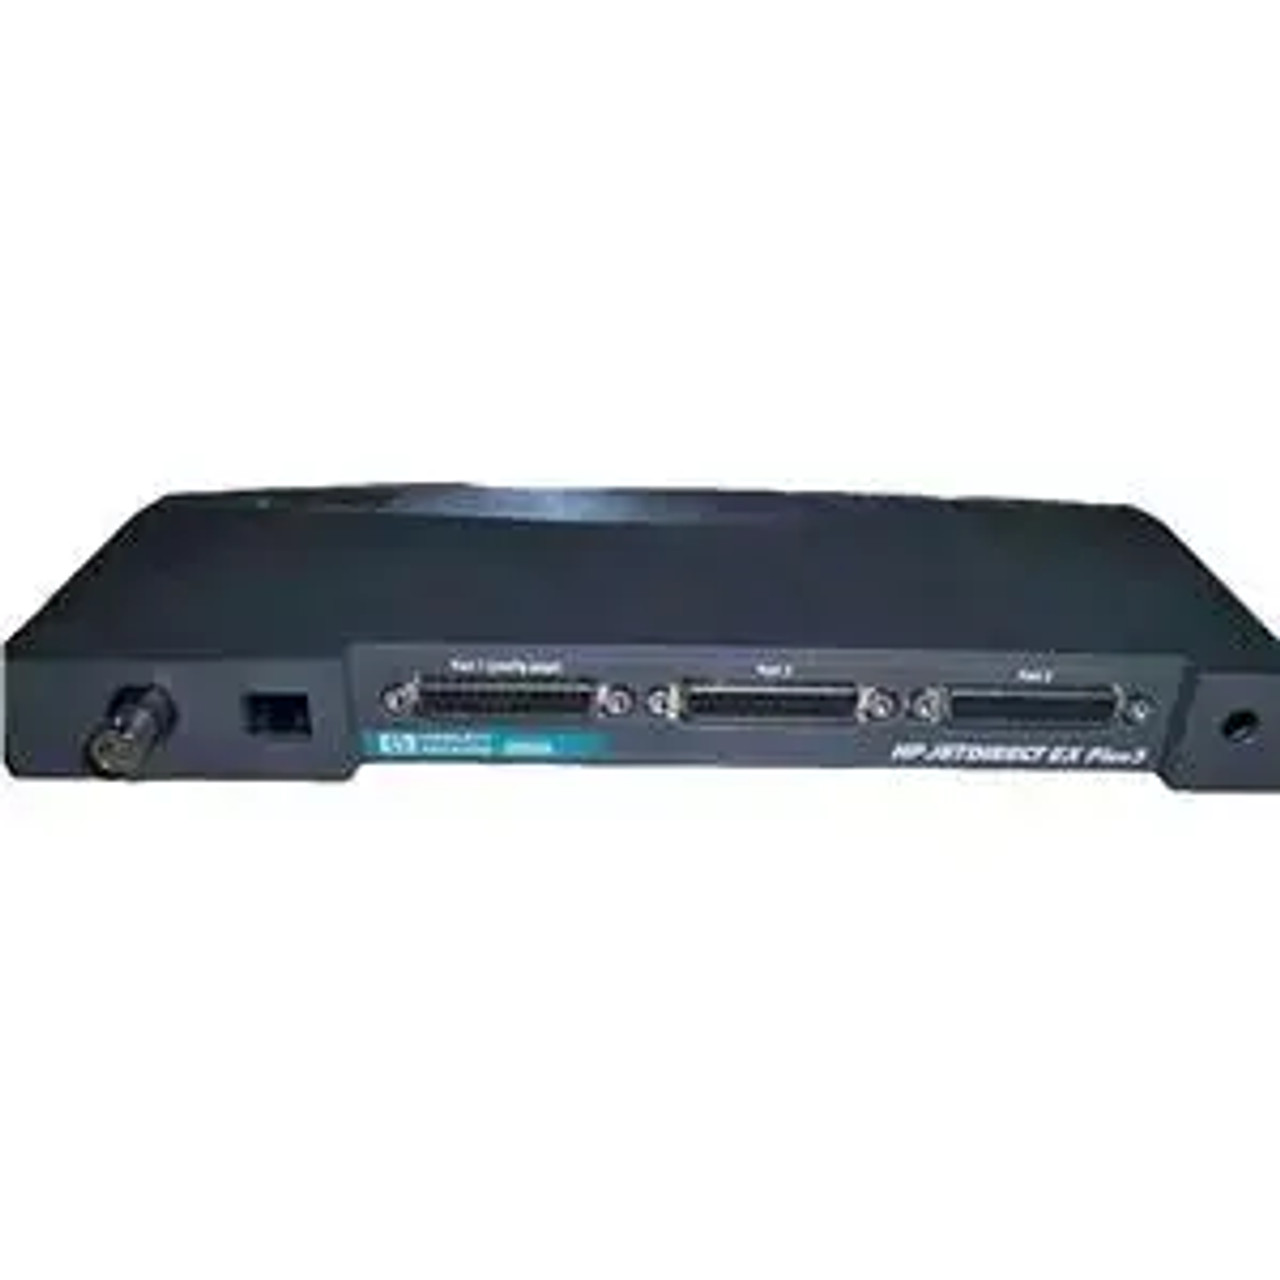 J2593-60001 | HP | JetDirect EX Plus3 External Print Server Ethernet 3-Port 10Base-T RJ45 + BNC LAN Interface Module